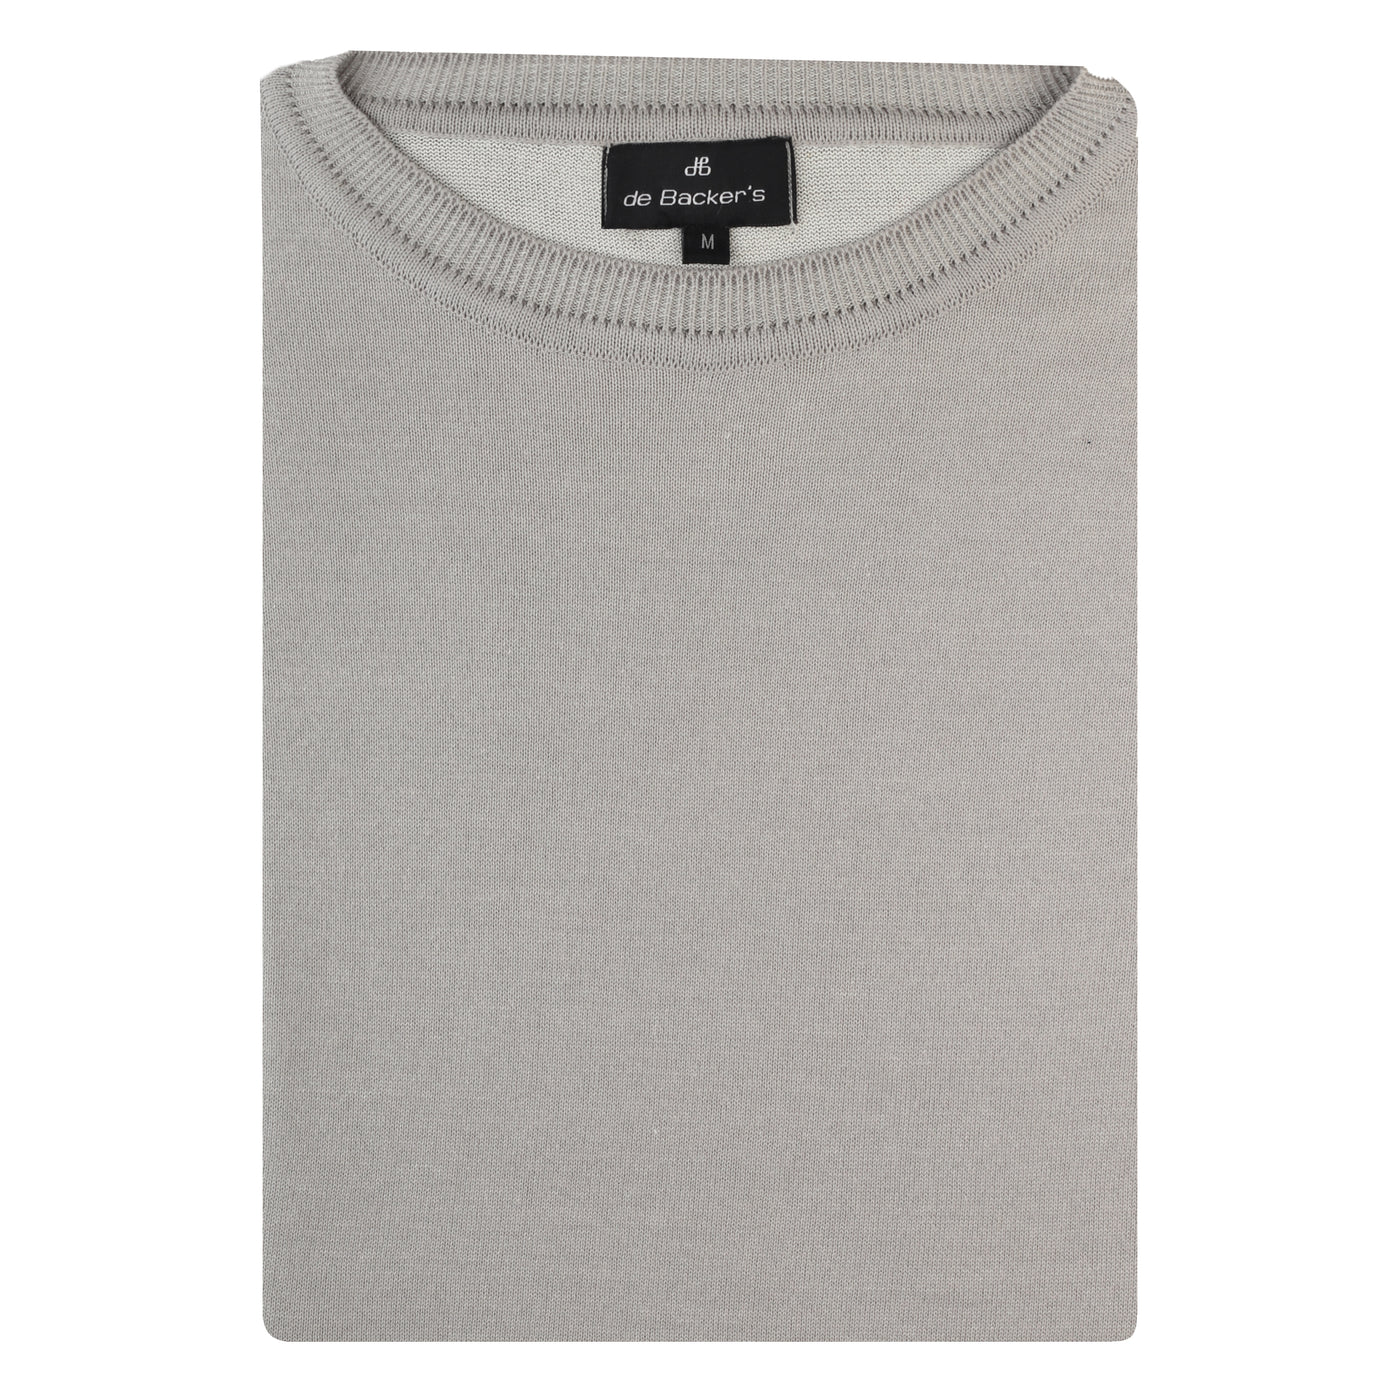 Light-Gray T-shirt